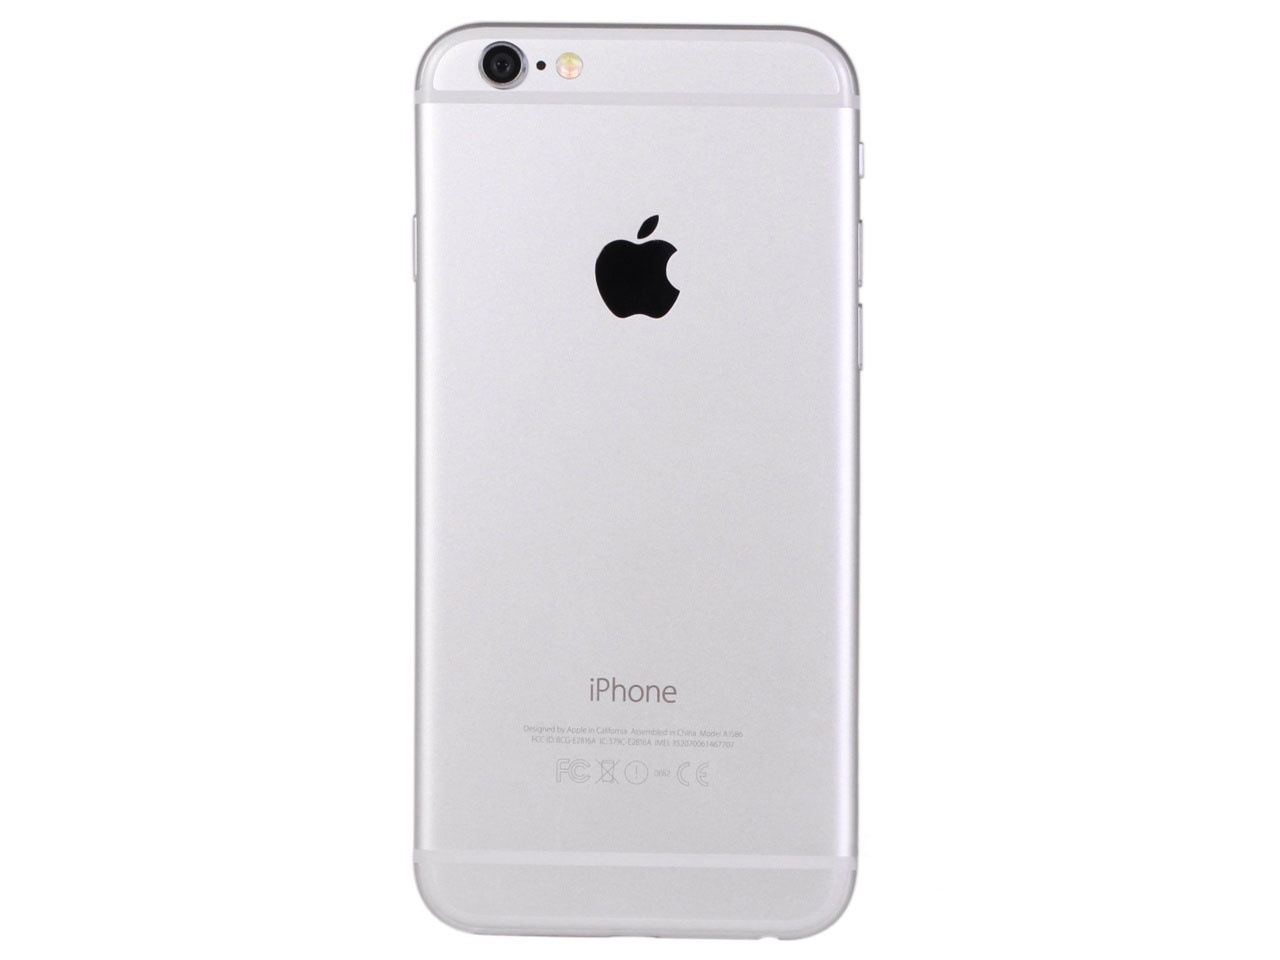 【图】苹果iPhone6 32GB图片( Apple iPhone6 图片)__标准外观图_第4页_太平洋产品报价